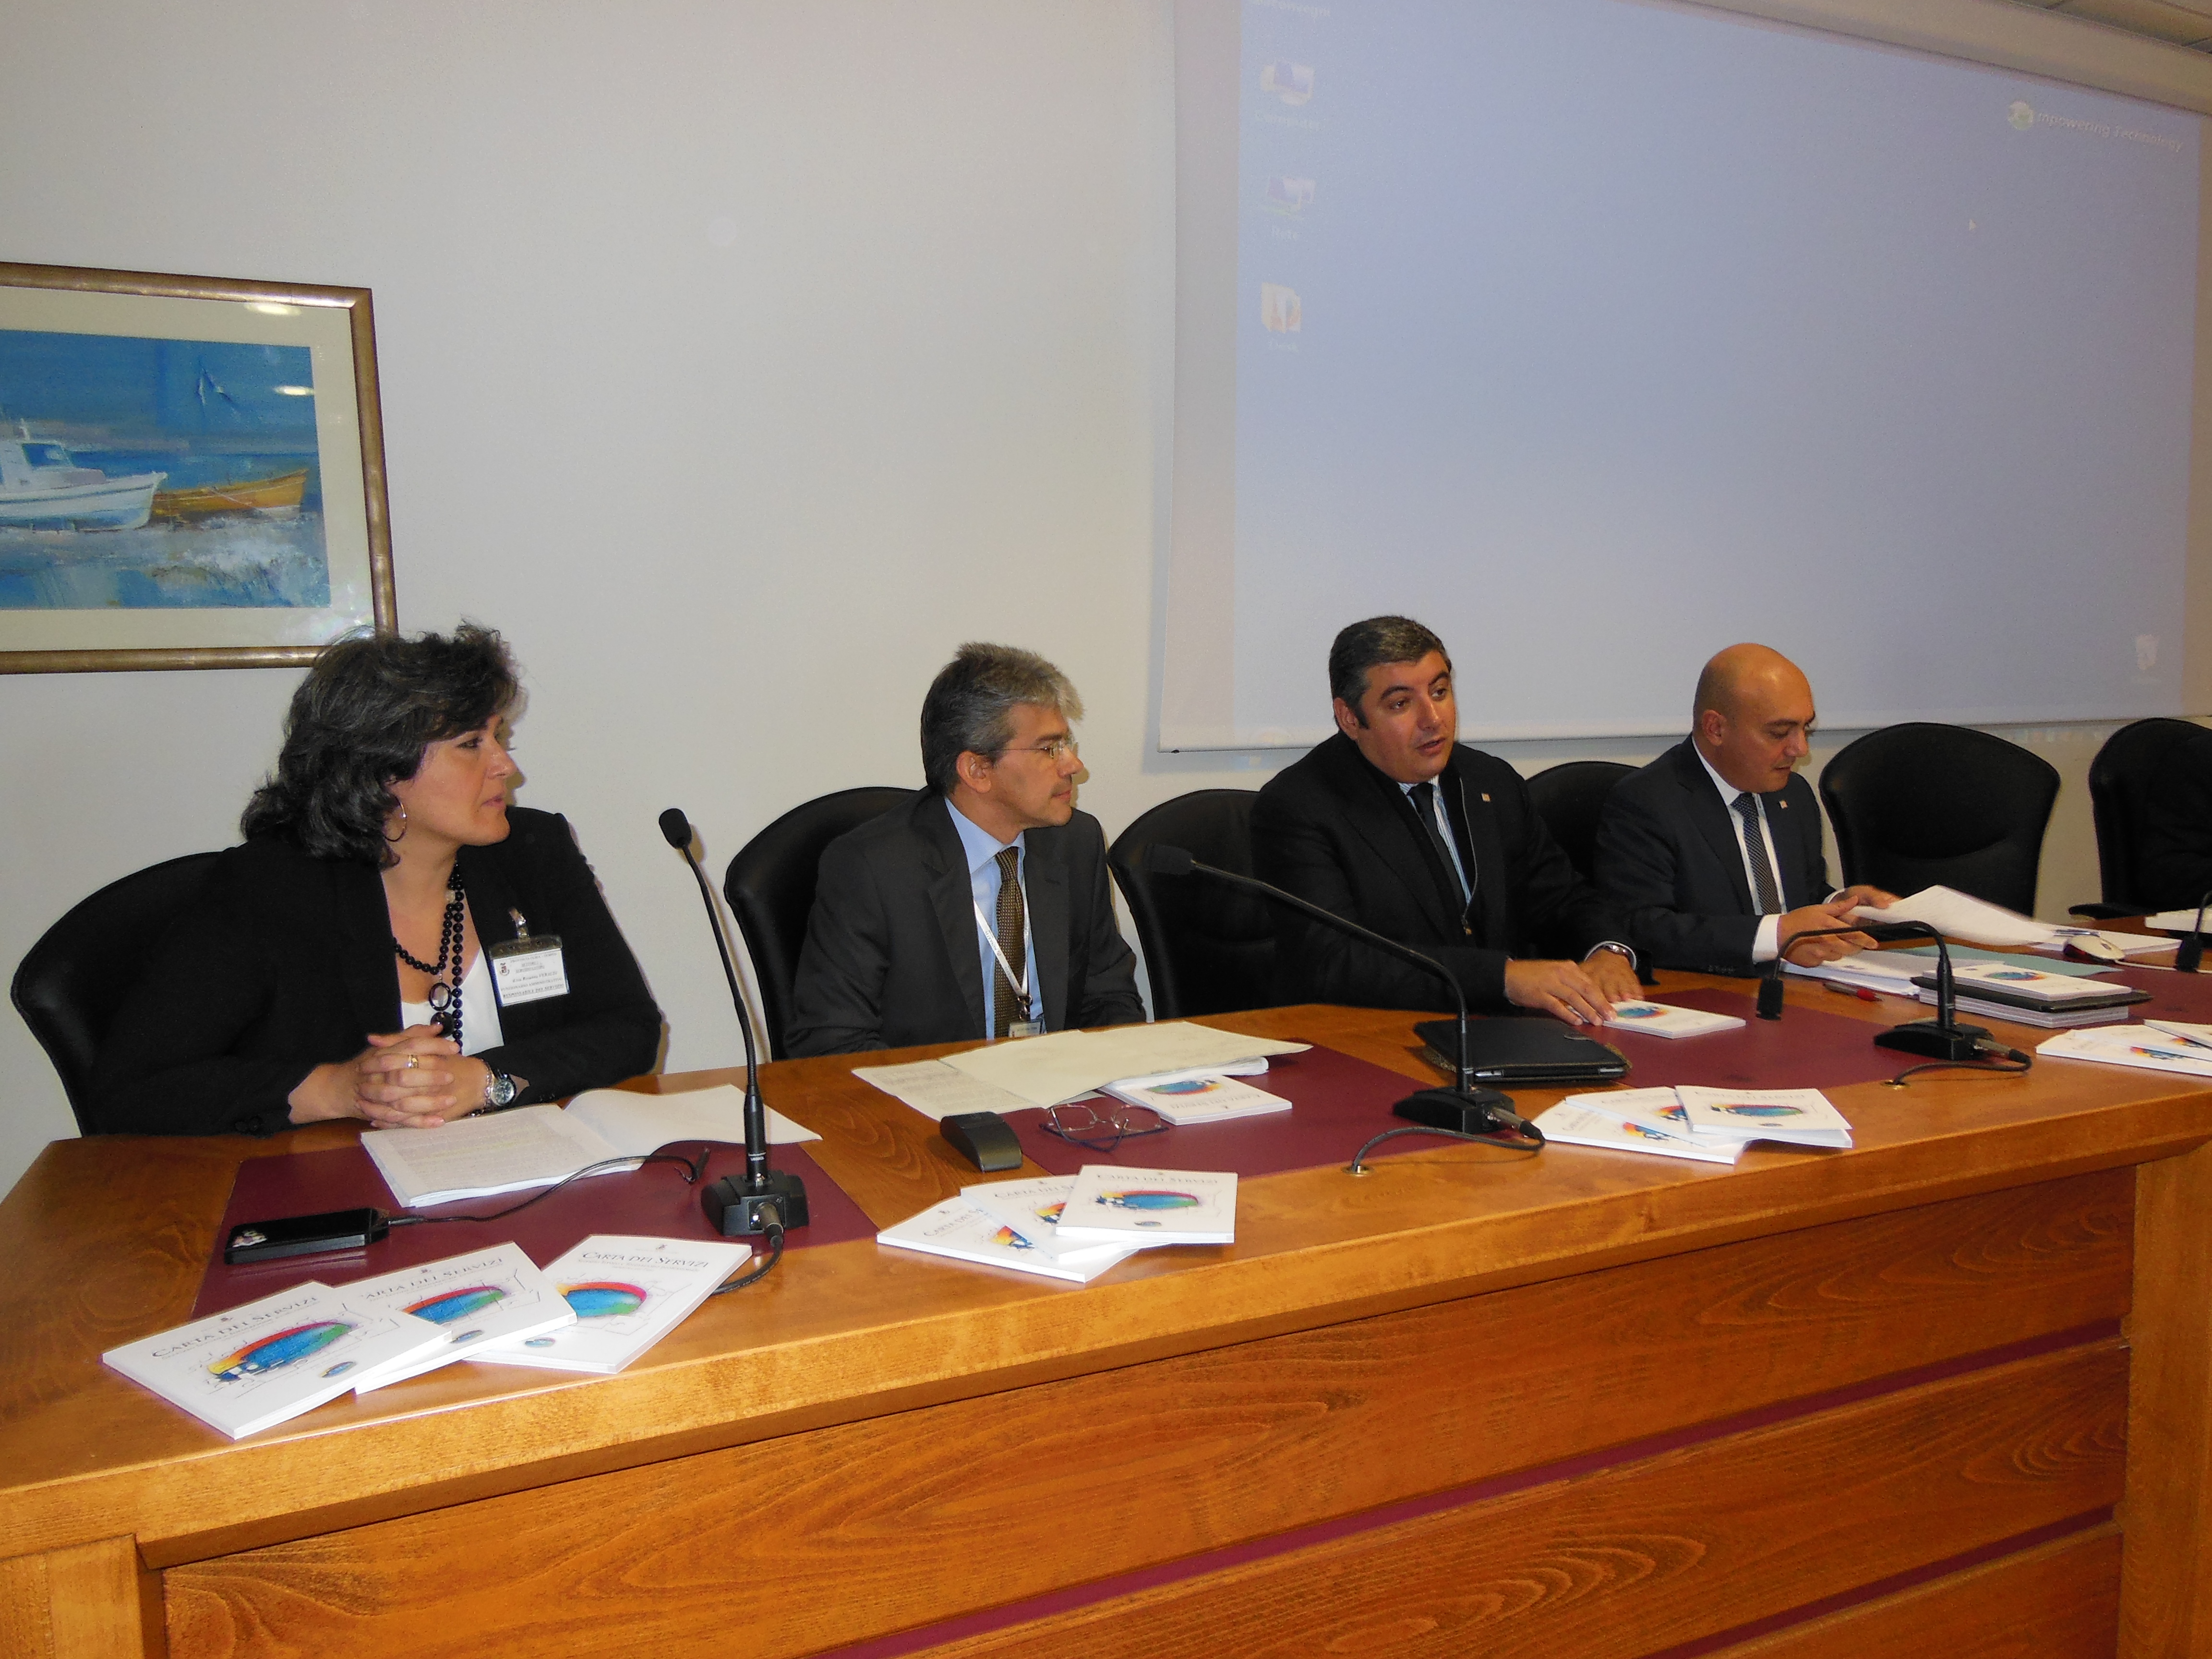 Quirico Sanna e Gian Battista Conti hanno presentato La Carta dei Servizi per il lavoro e la formazione professionale della Provincia